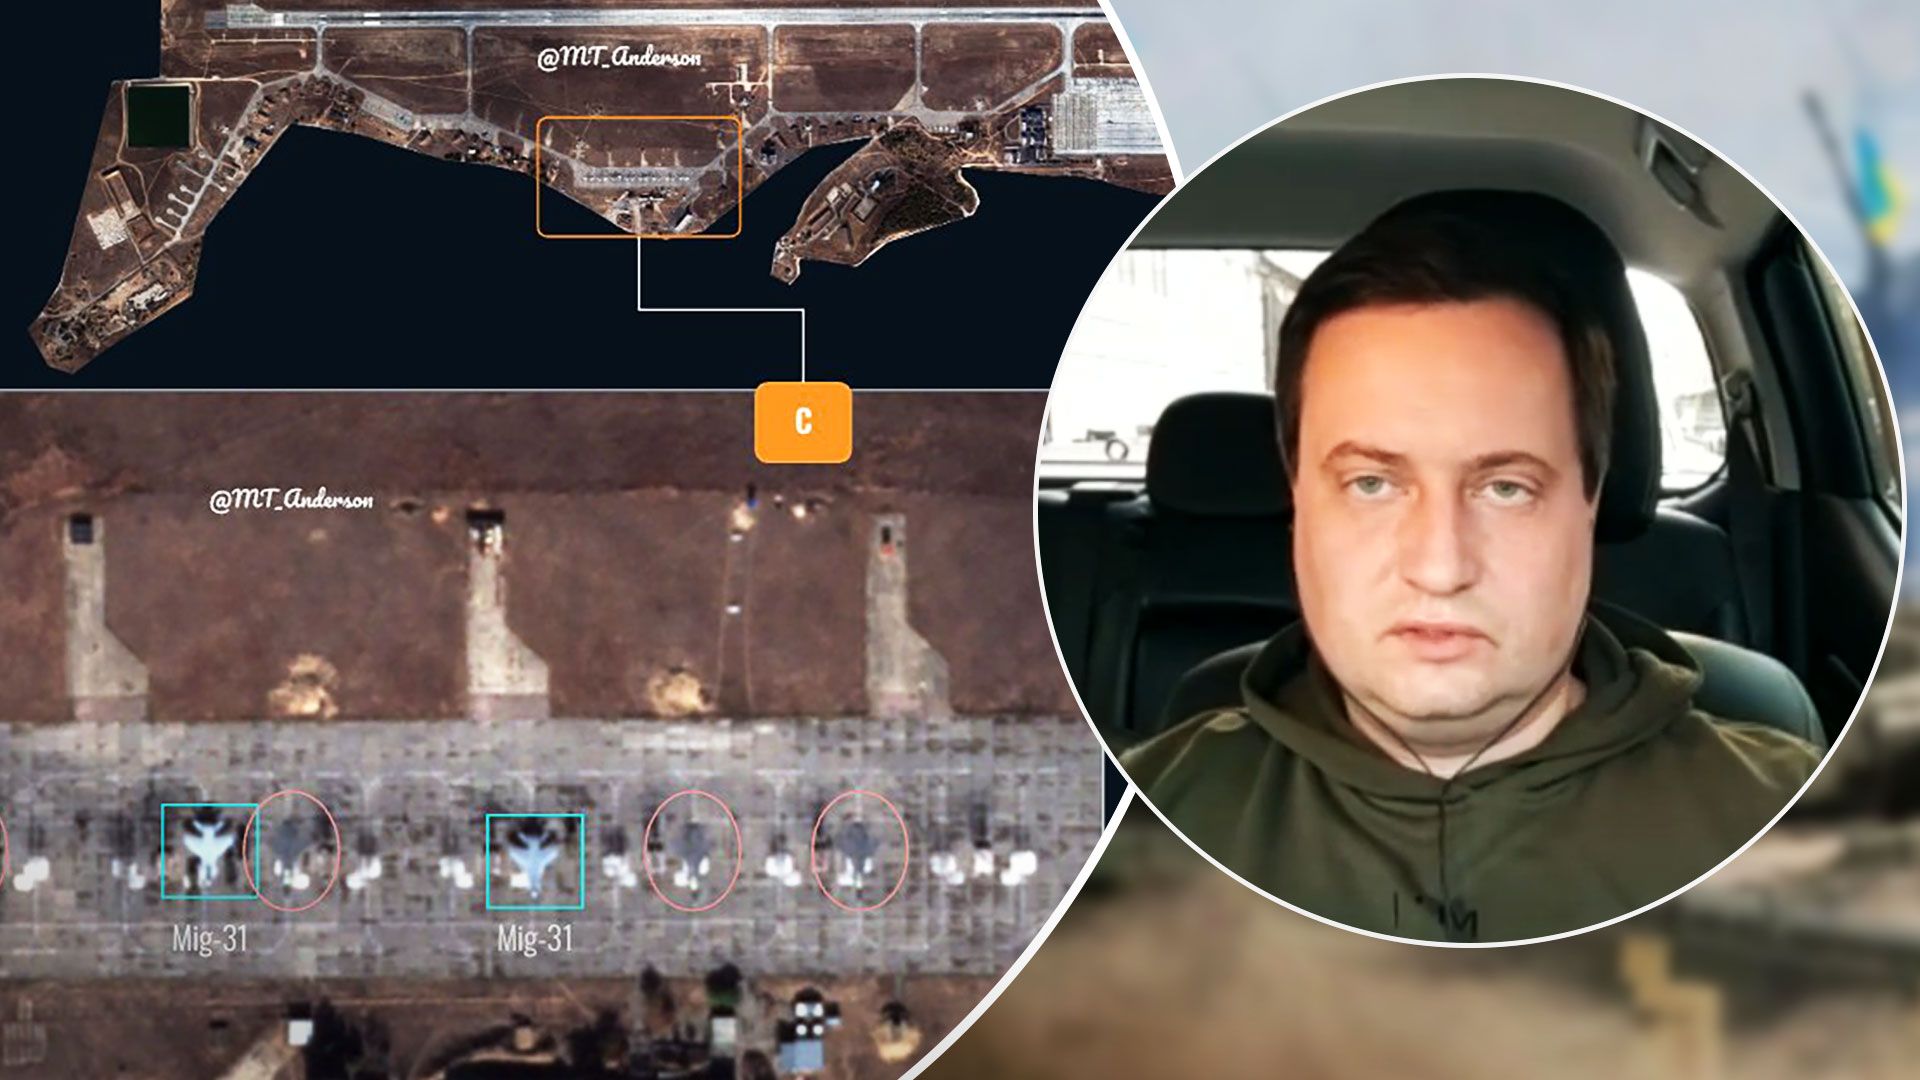 У ГУР розповіли про графіті МіГ-31 на аеродромі в Криму - 24 Канал